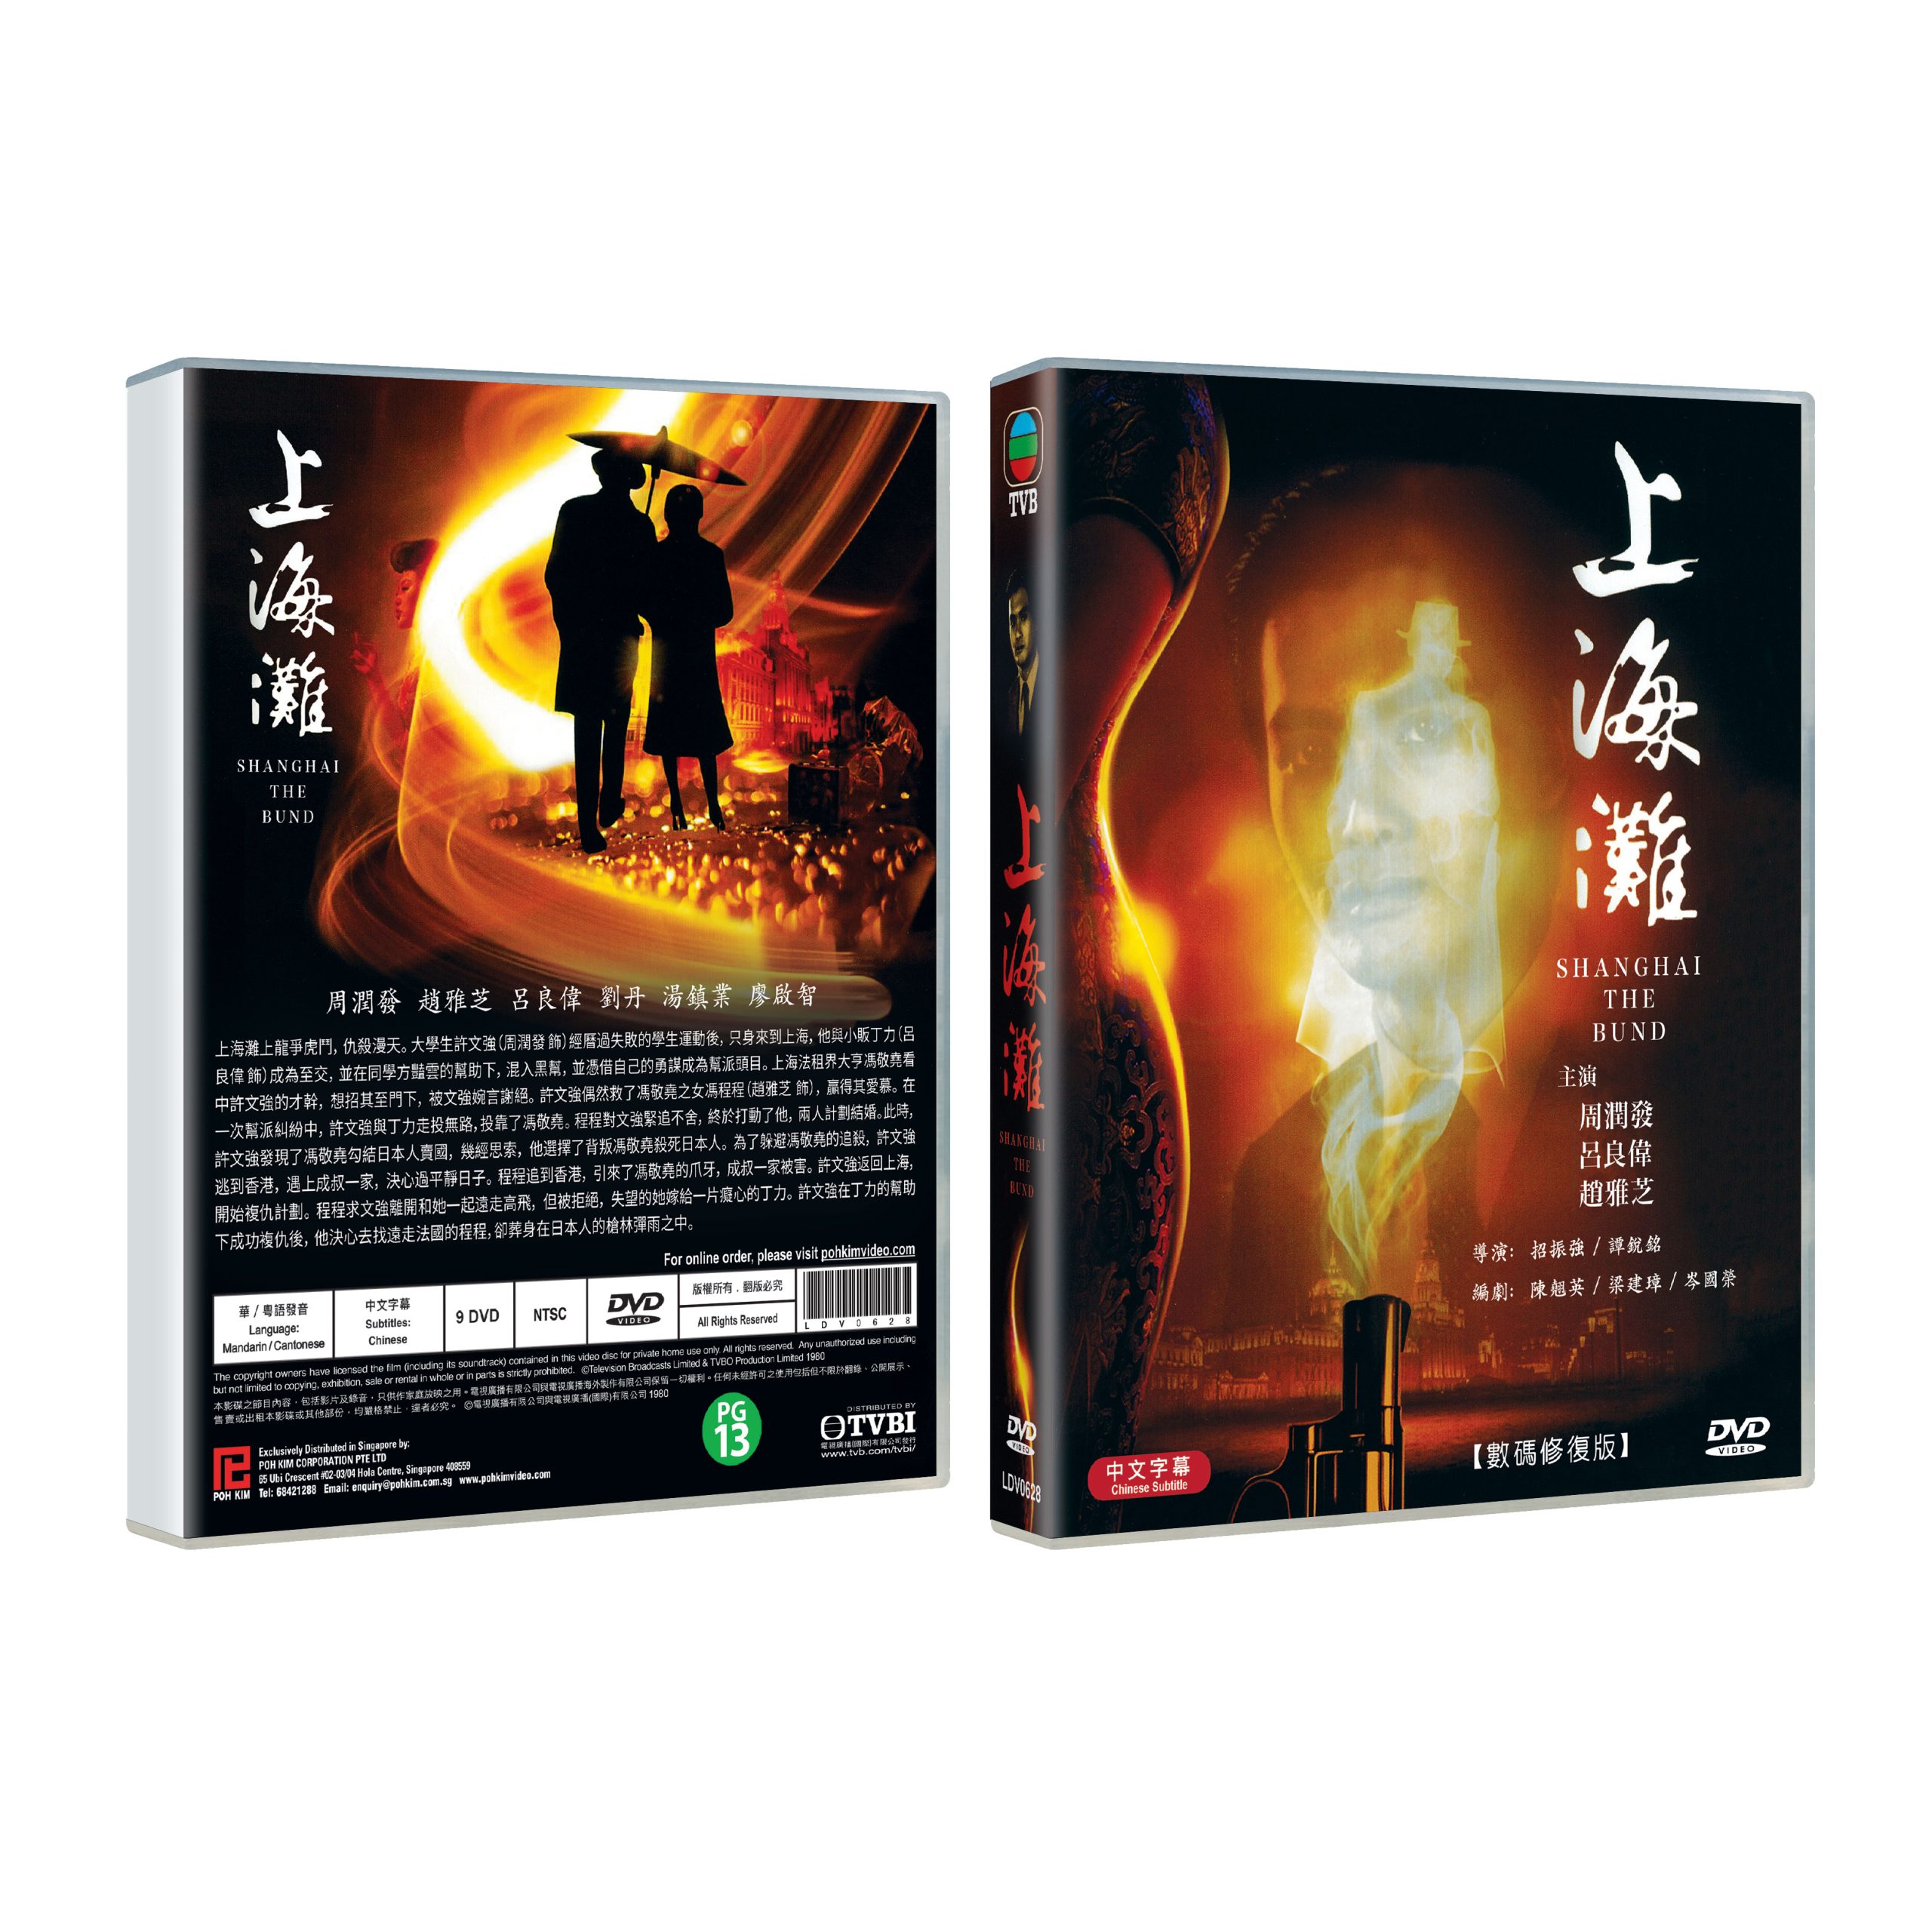 上海滩THE BUND (TVB Drama DVD) - Poh Kim Video